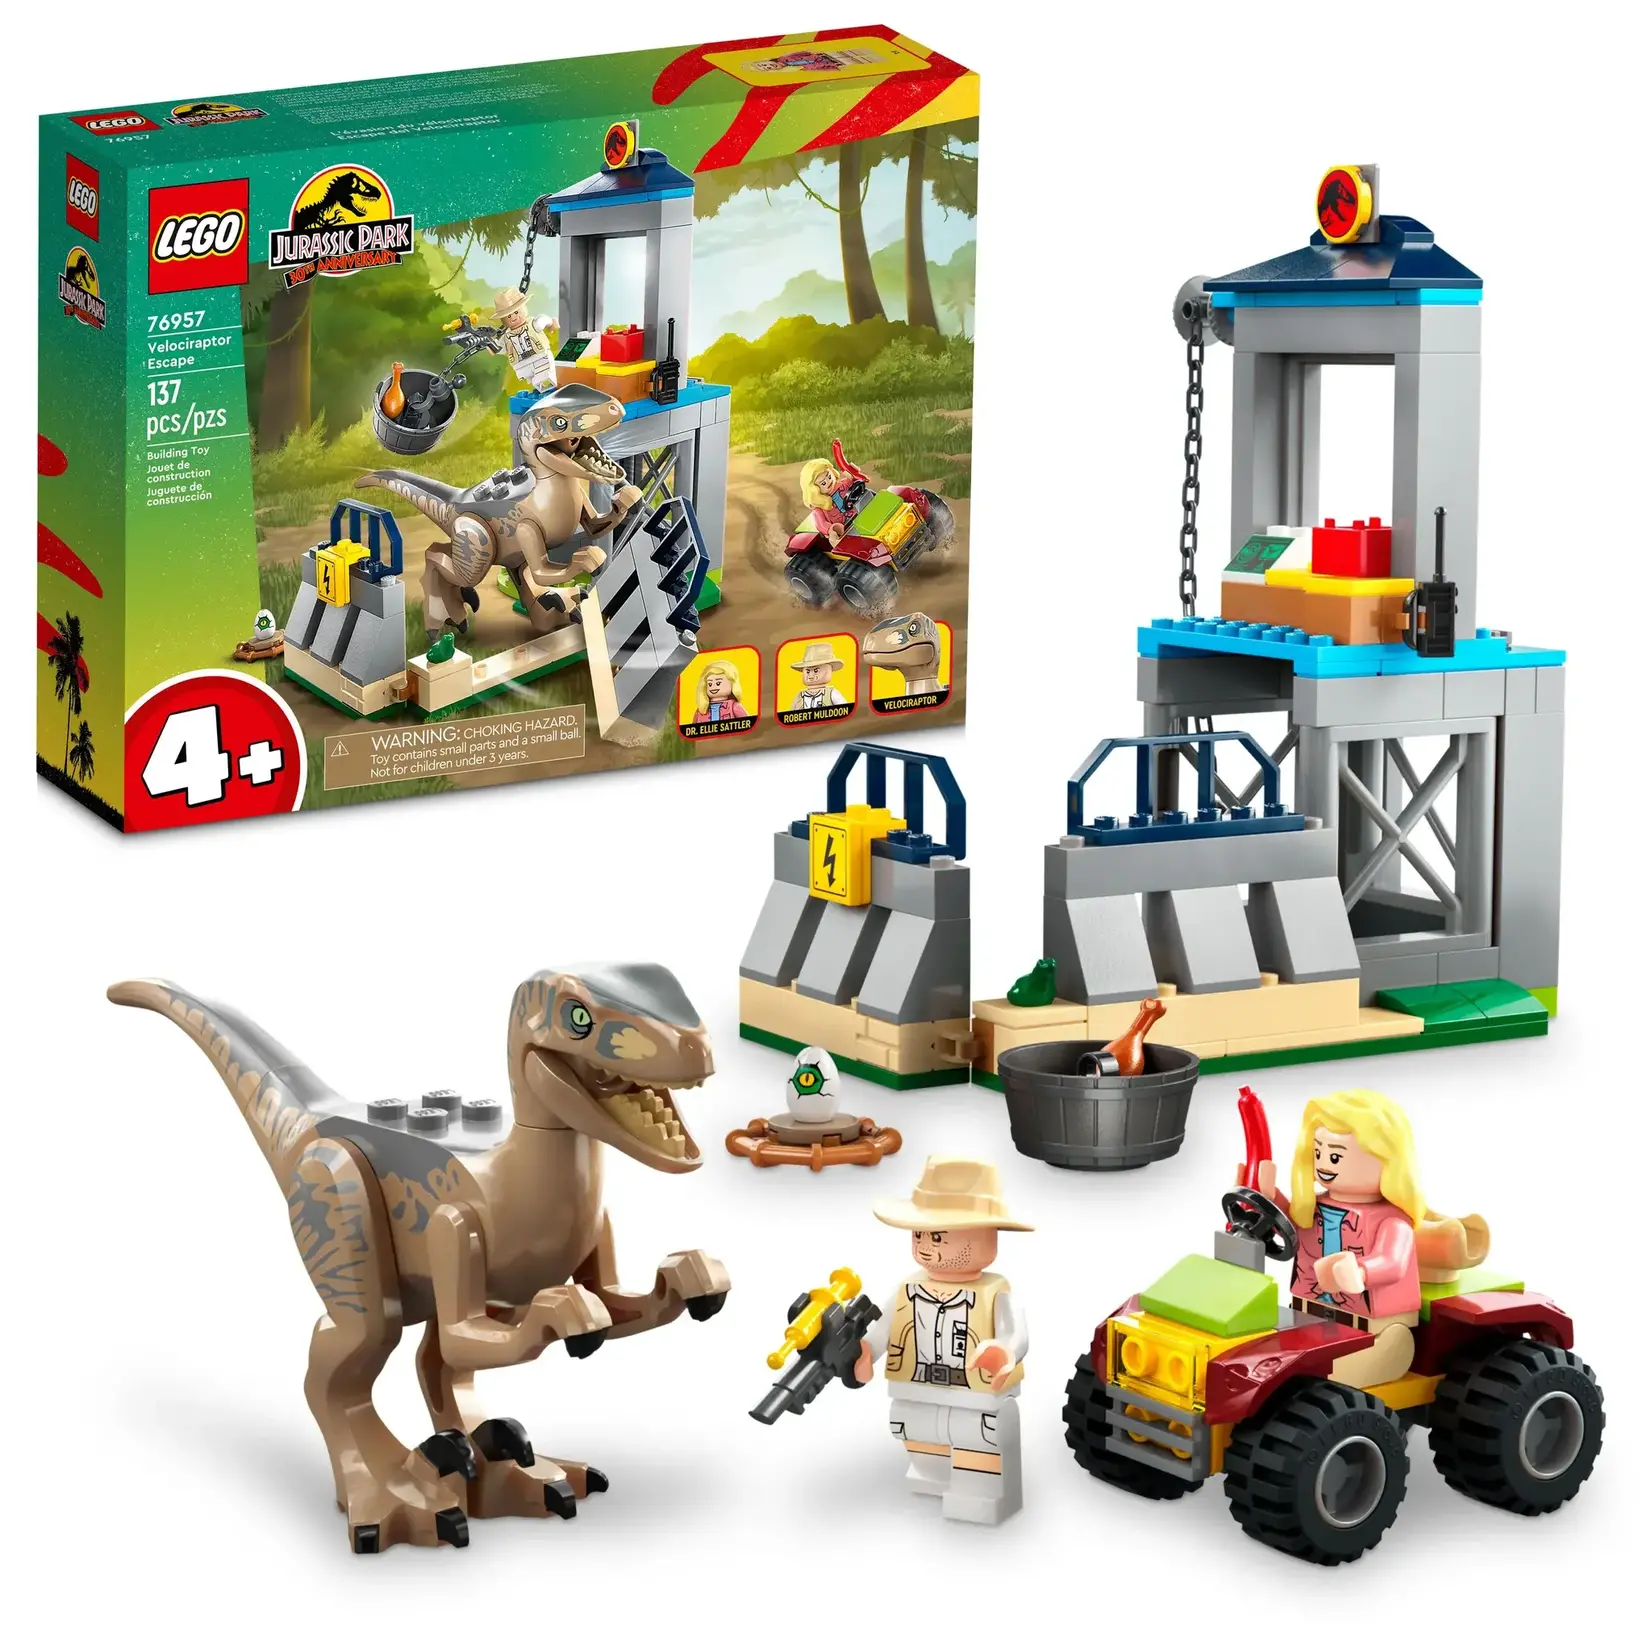 LEGO 76957 LEGO® Jurassic Park Velociraptor Escape